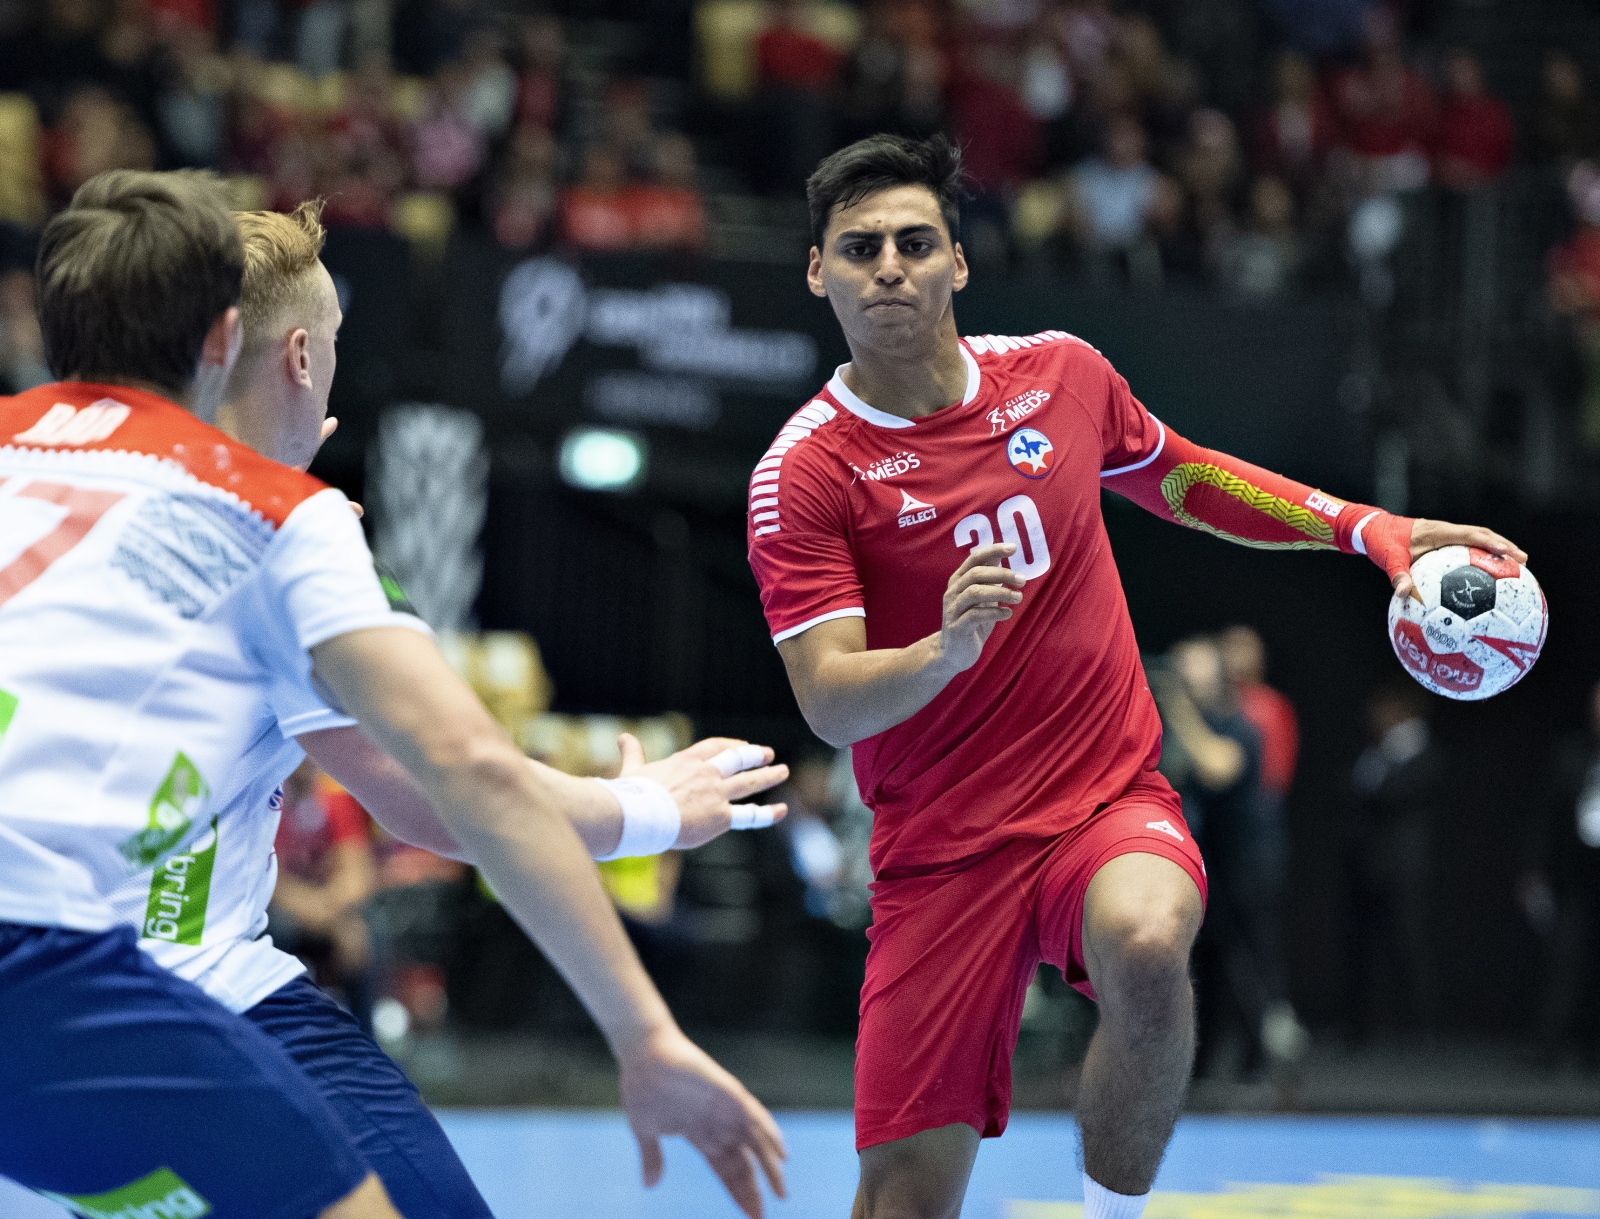 Mistrzostwa Świata w piłce ręcznej, mecz między Norwegią i Chile w duńskim Herning. Fot. PAP/EPA/Henning Bagger